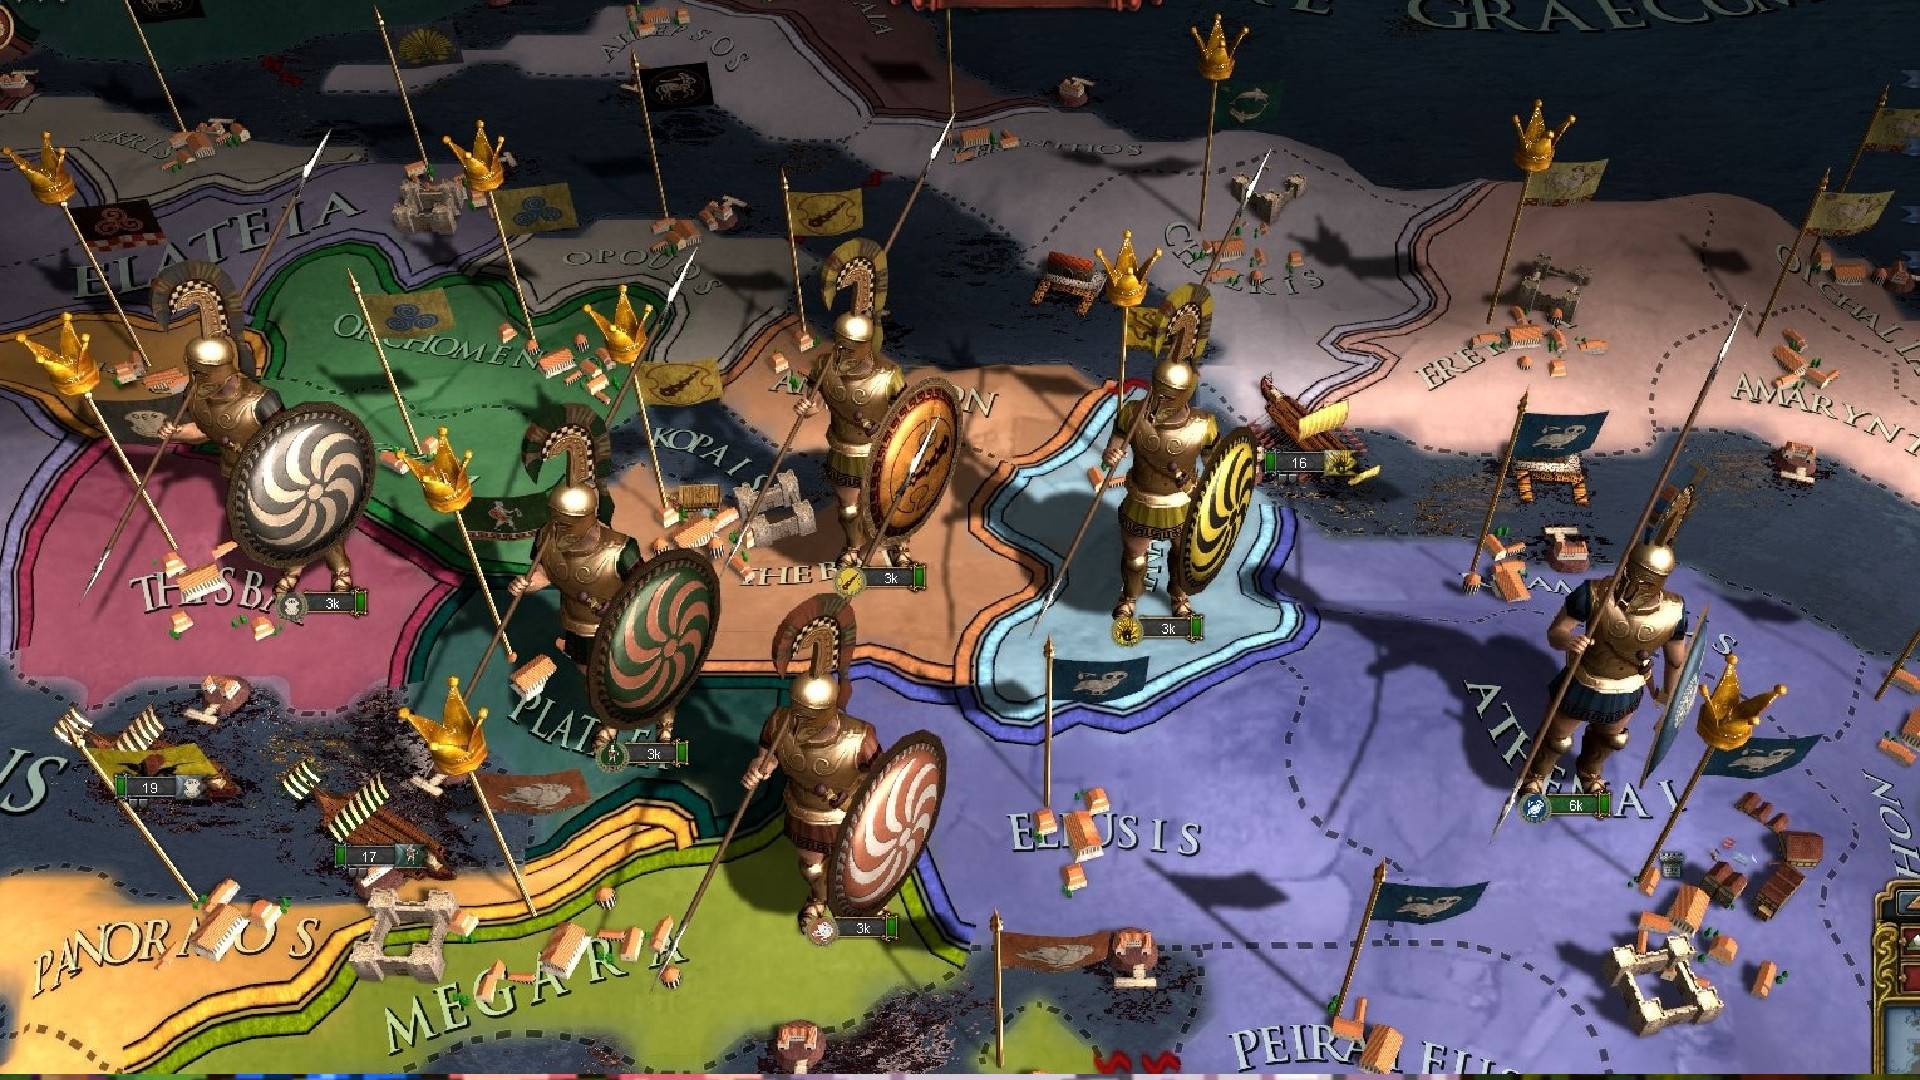 Massive Europa Universalis 4 modu strateji oyununu MÖ 600’e geri götürüyor